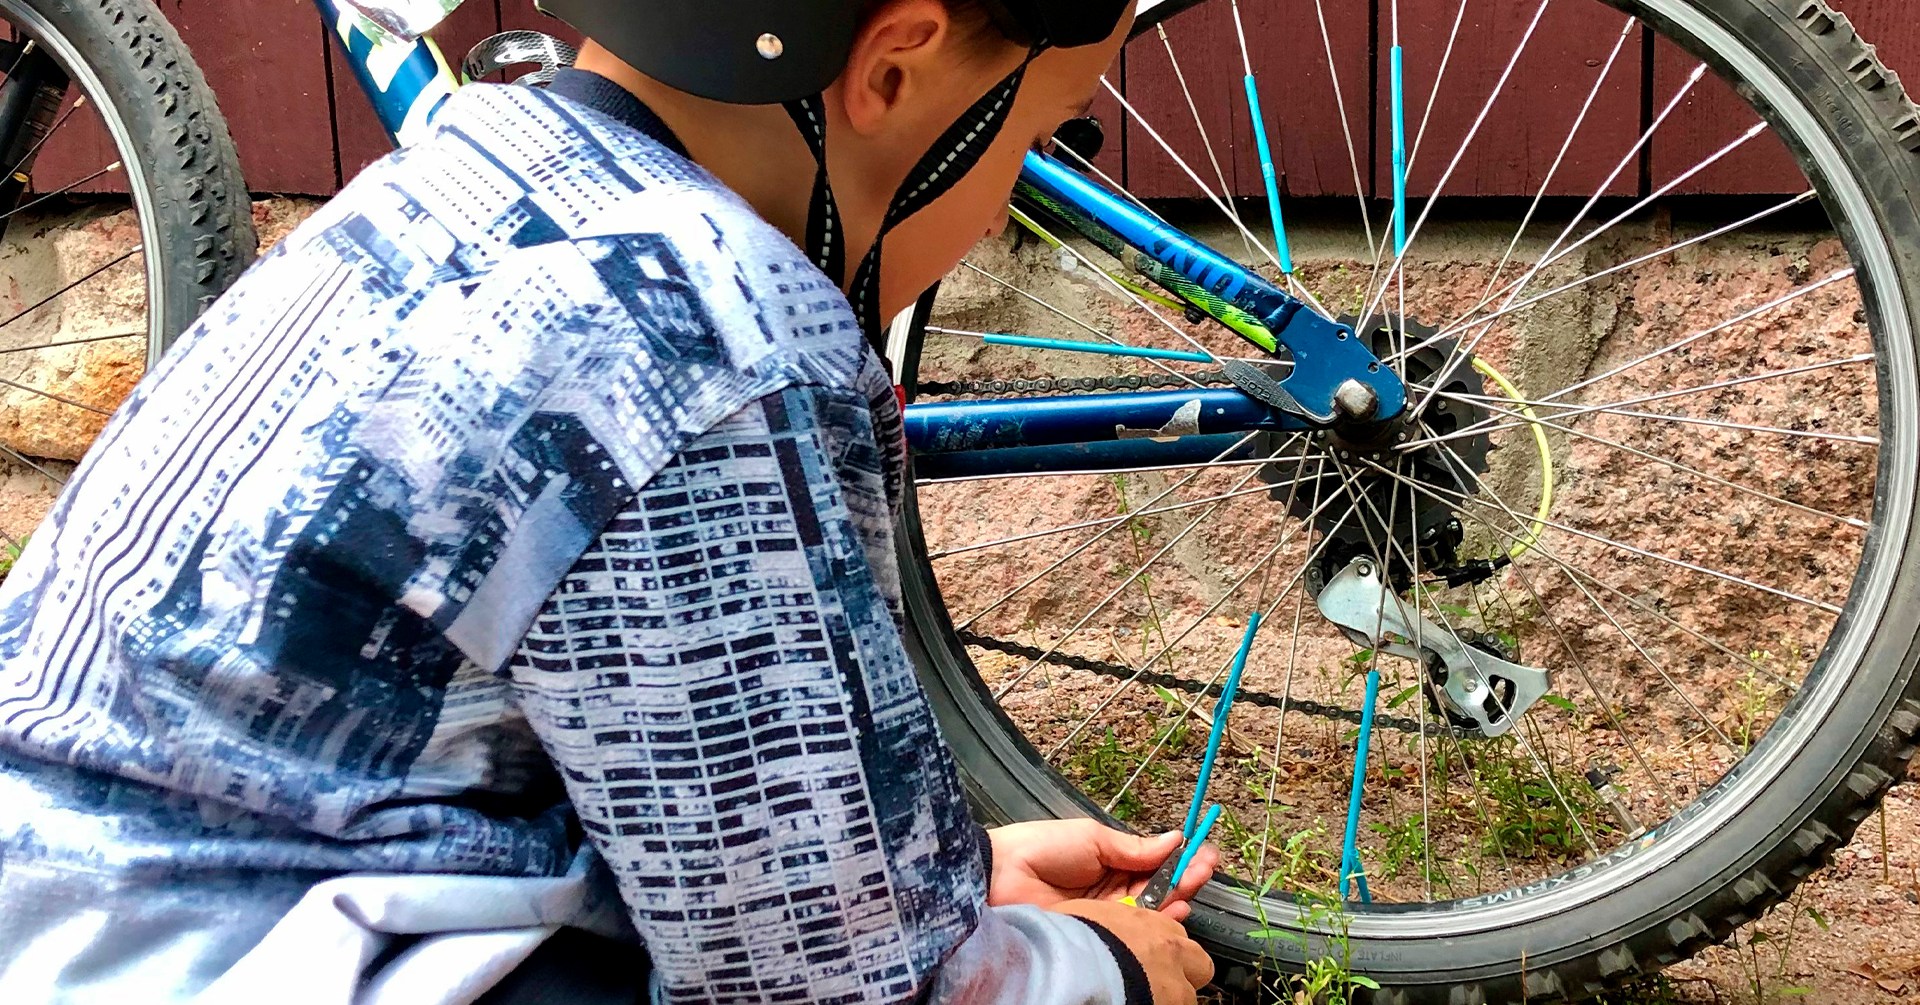 Lapsi koristelee polkupyörää.